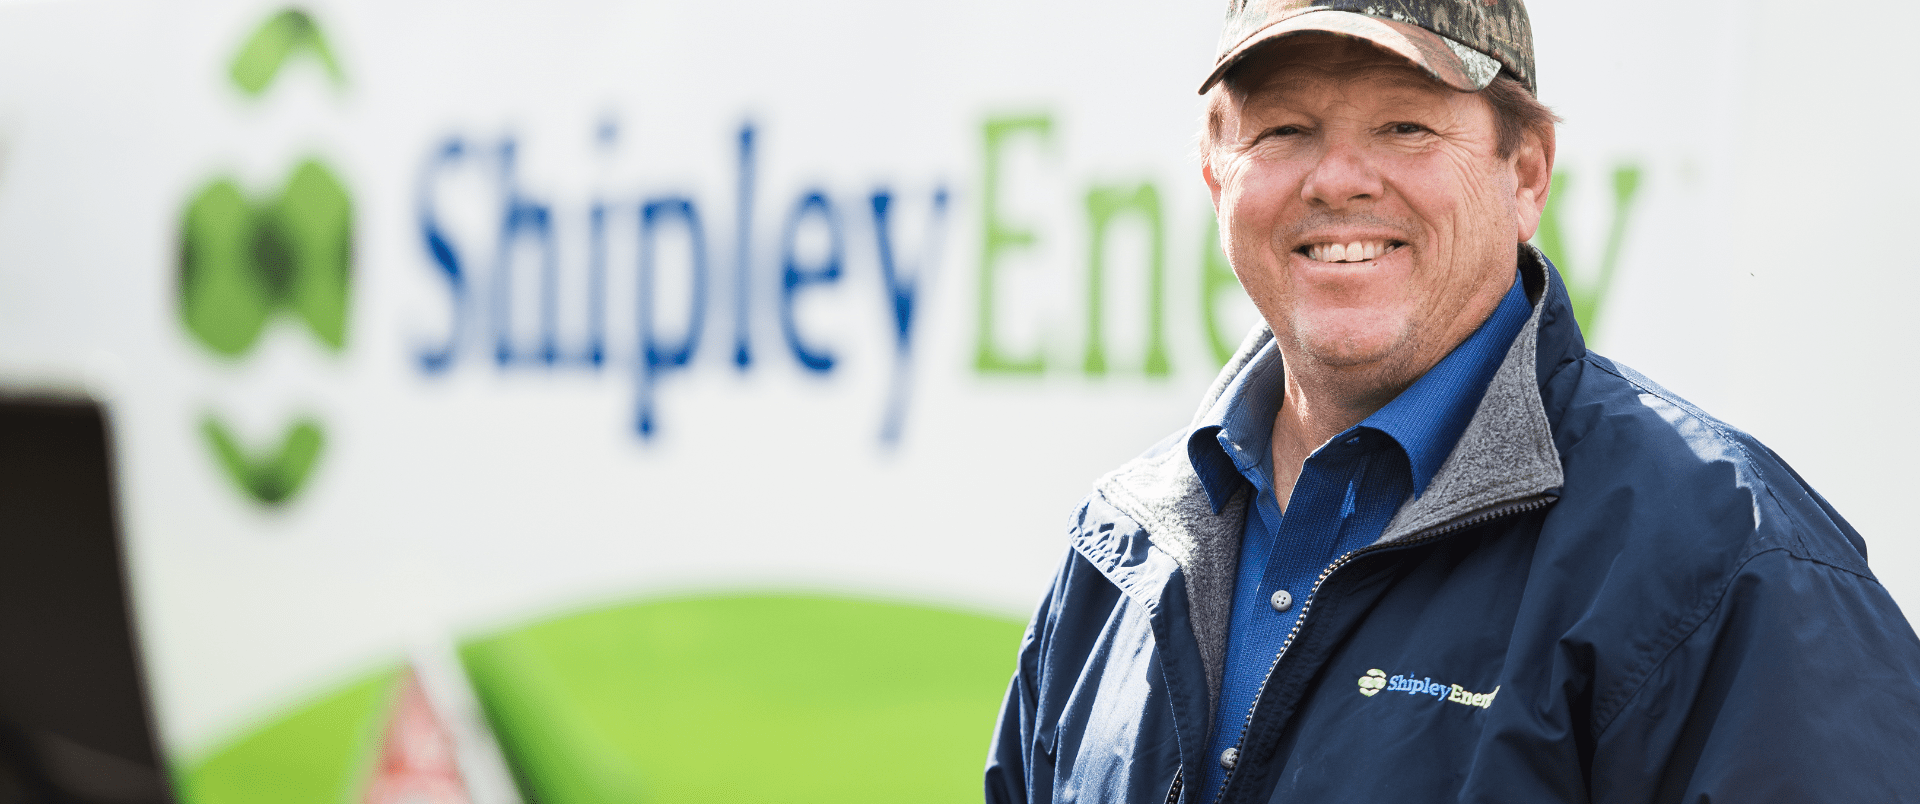 Welcome to Shipley Energy